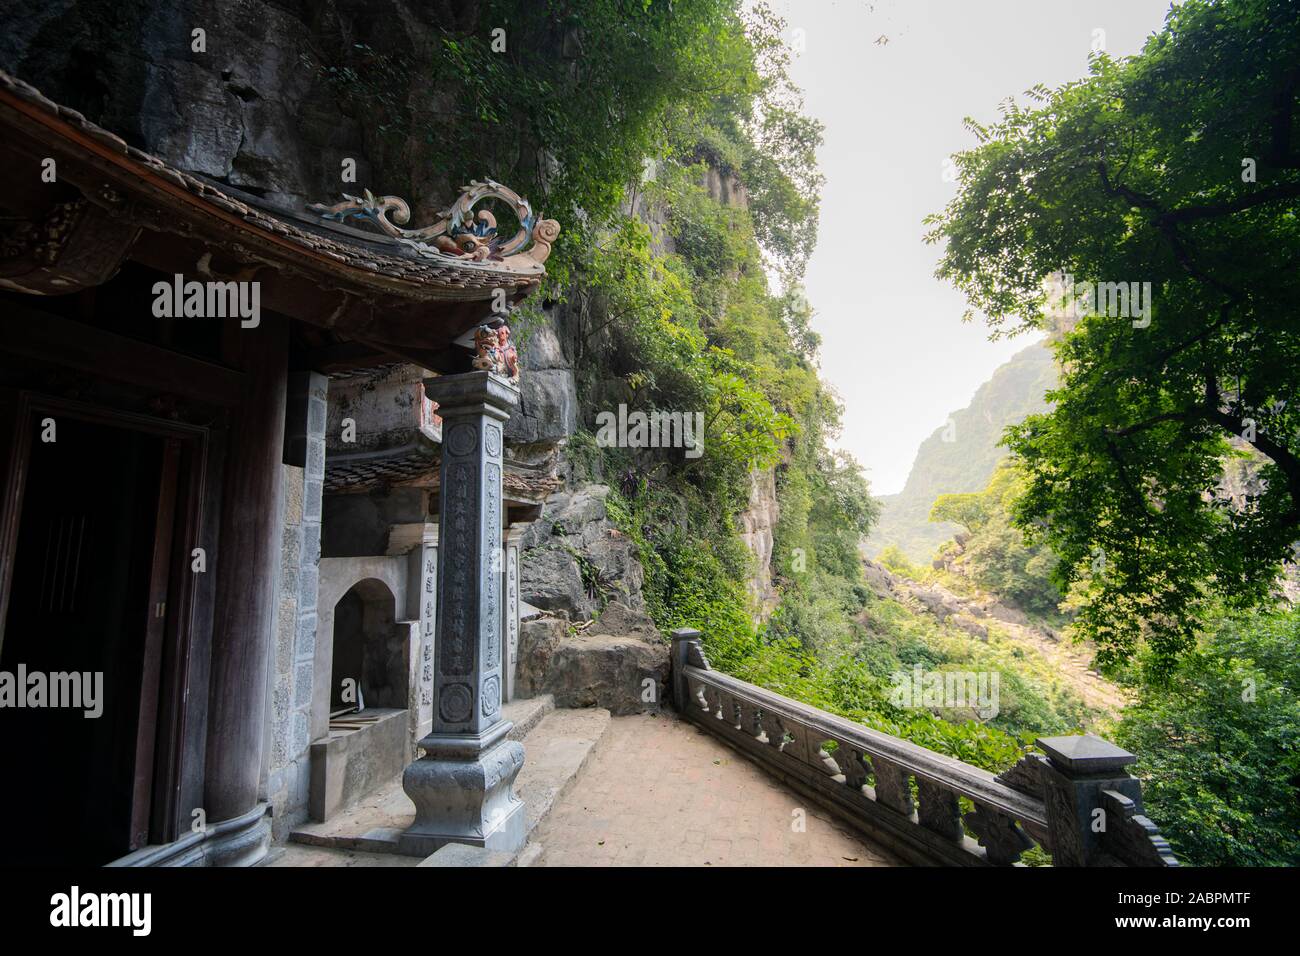 Eine geheime buddhistischen Tempel entfernt im Regen ausgeblendet - Wald von Tam Coc, Vietnam Stockfoto